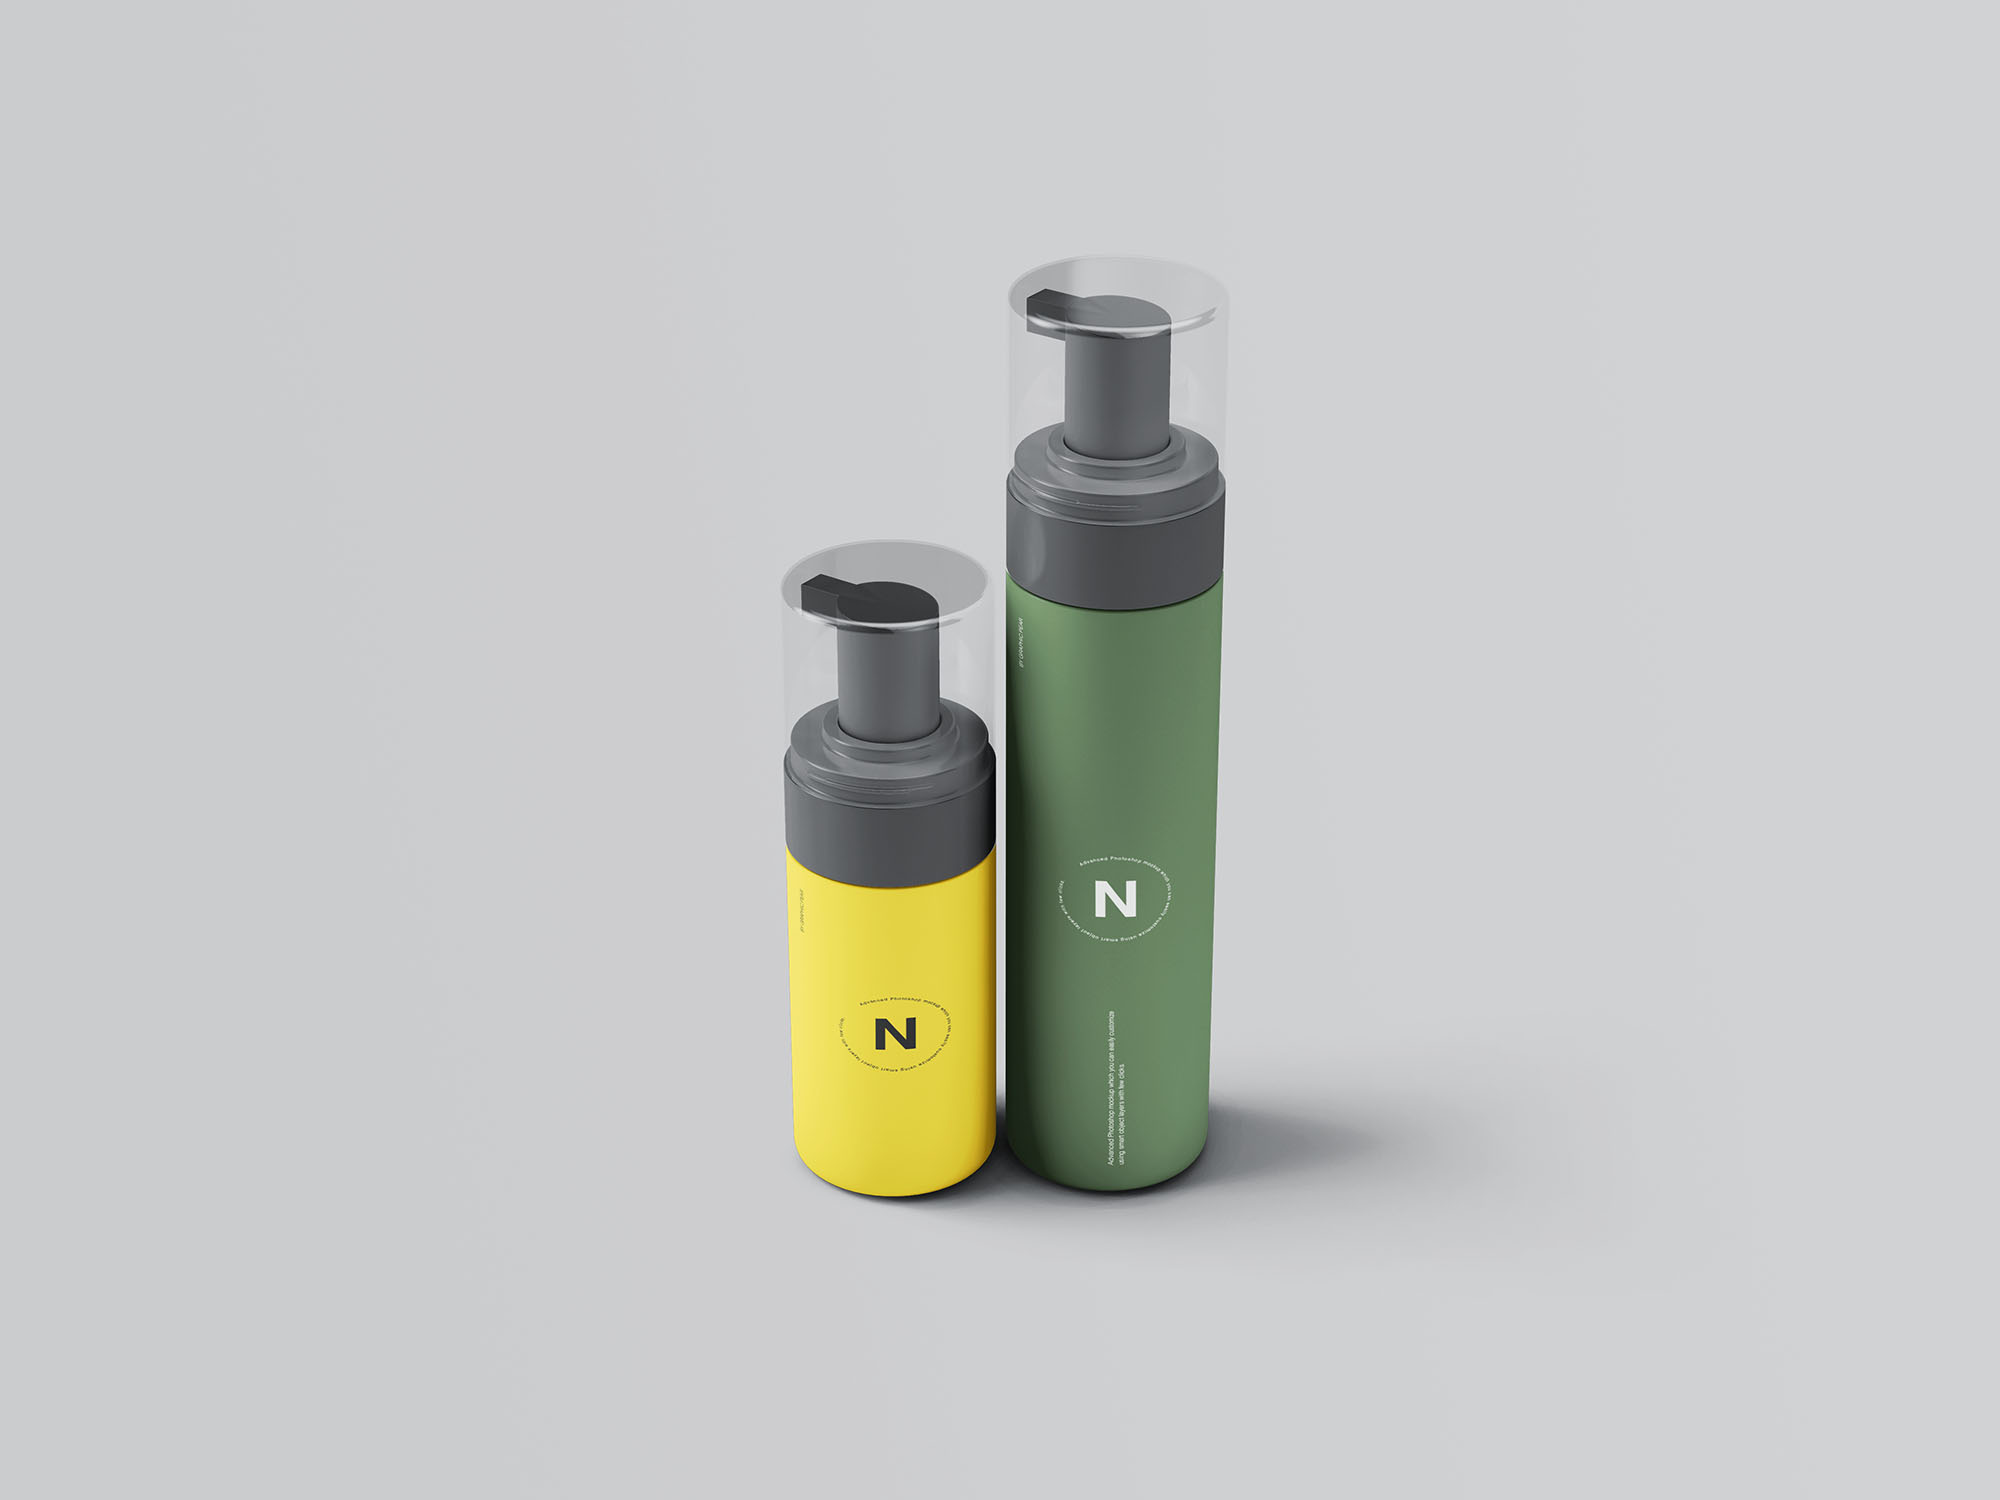 按压式化妆品护肤品瓶外观设计素材库精选模板 Cosmetic Bottles Packaging Mockup插图(5)